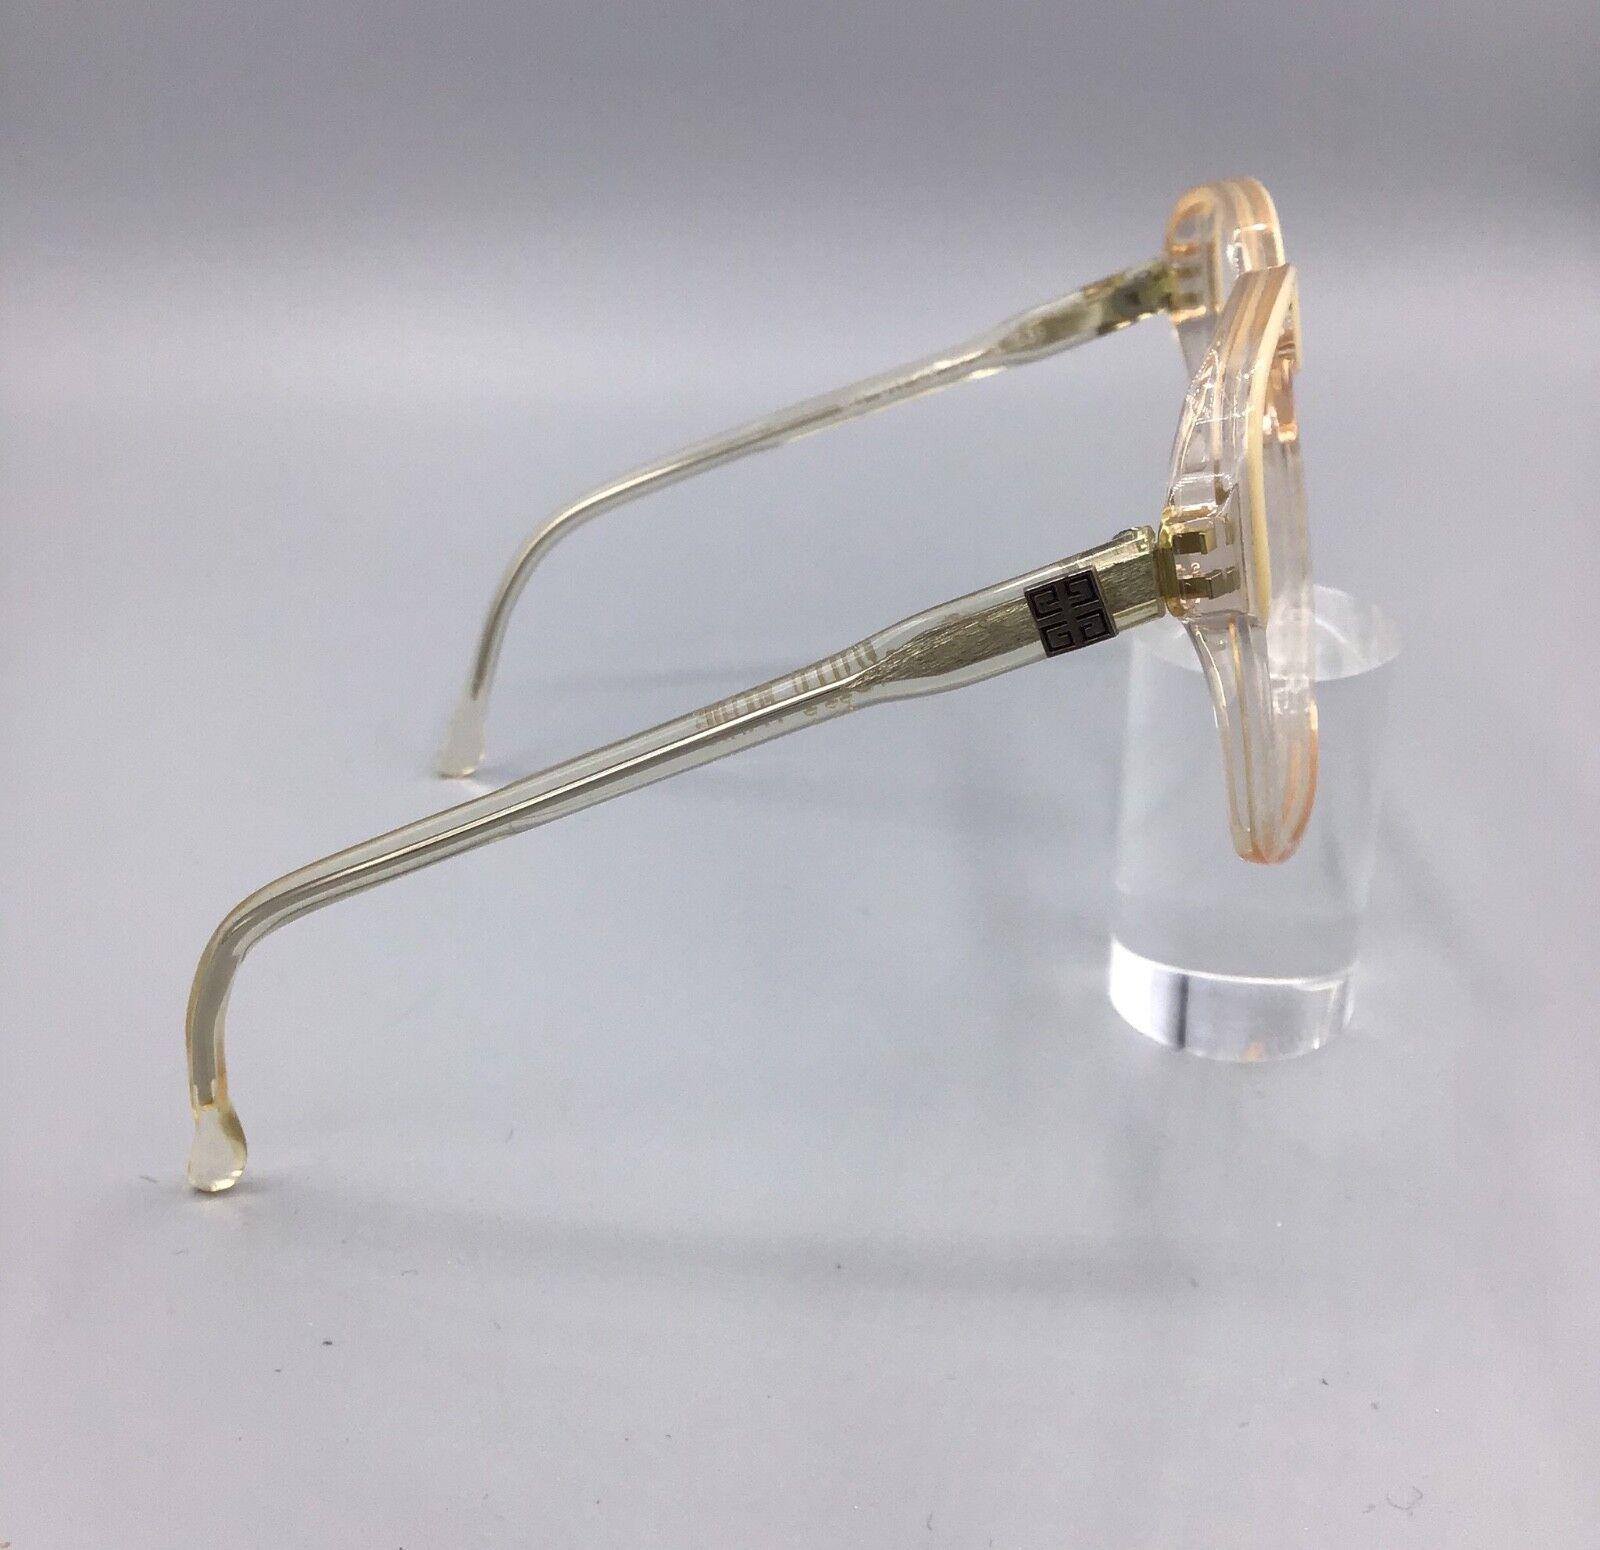 Givenchy Paris occhiale vintage eyewear frame brillen lunettes model ref 917 color 839